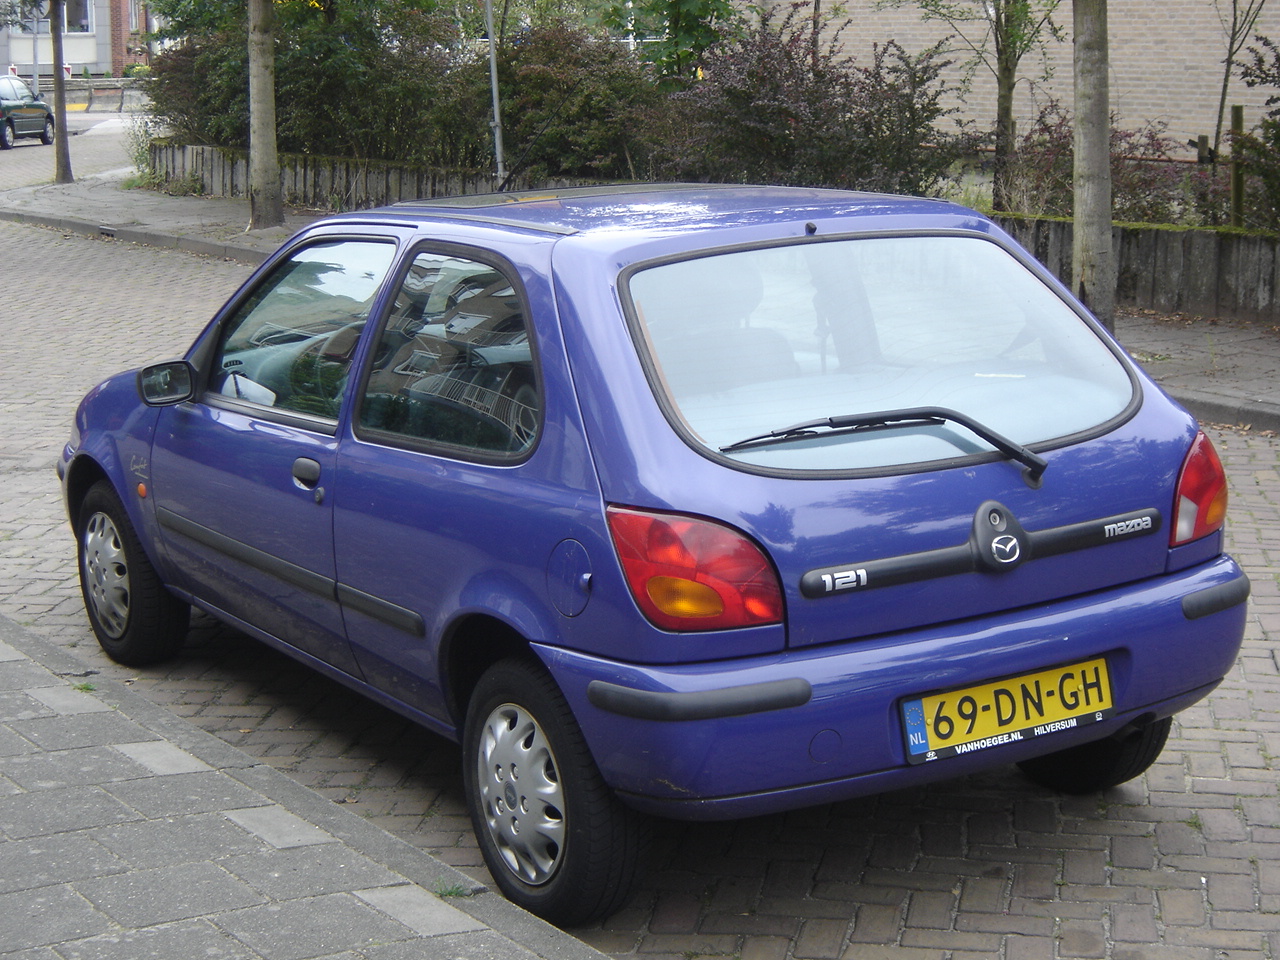 Hilversum: Mazda 121 1999 / Flickr - Partage de photos!